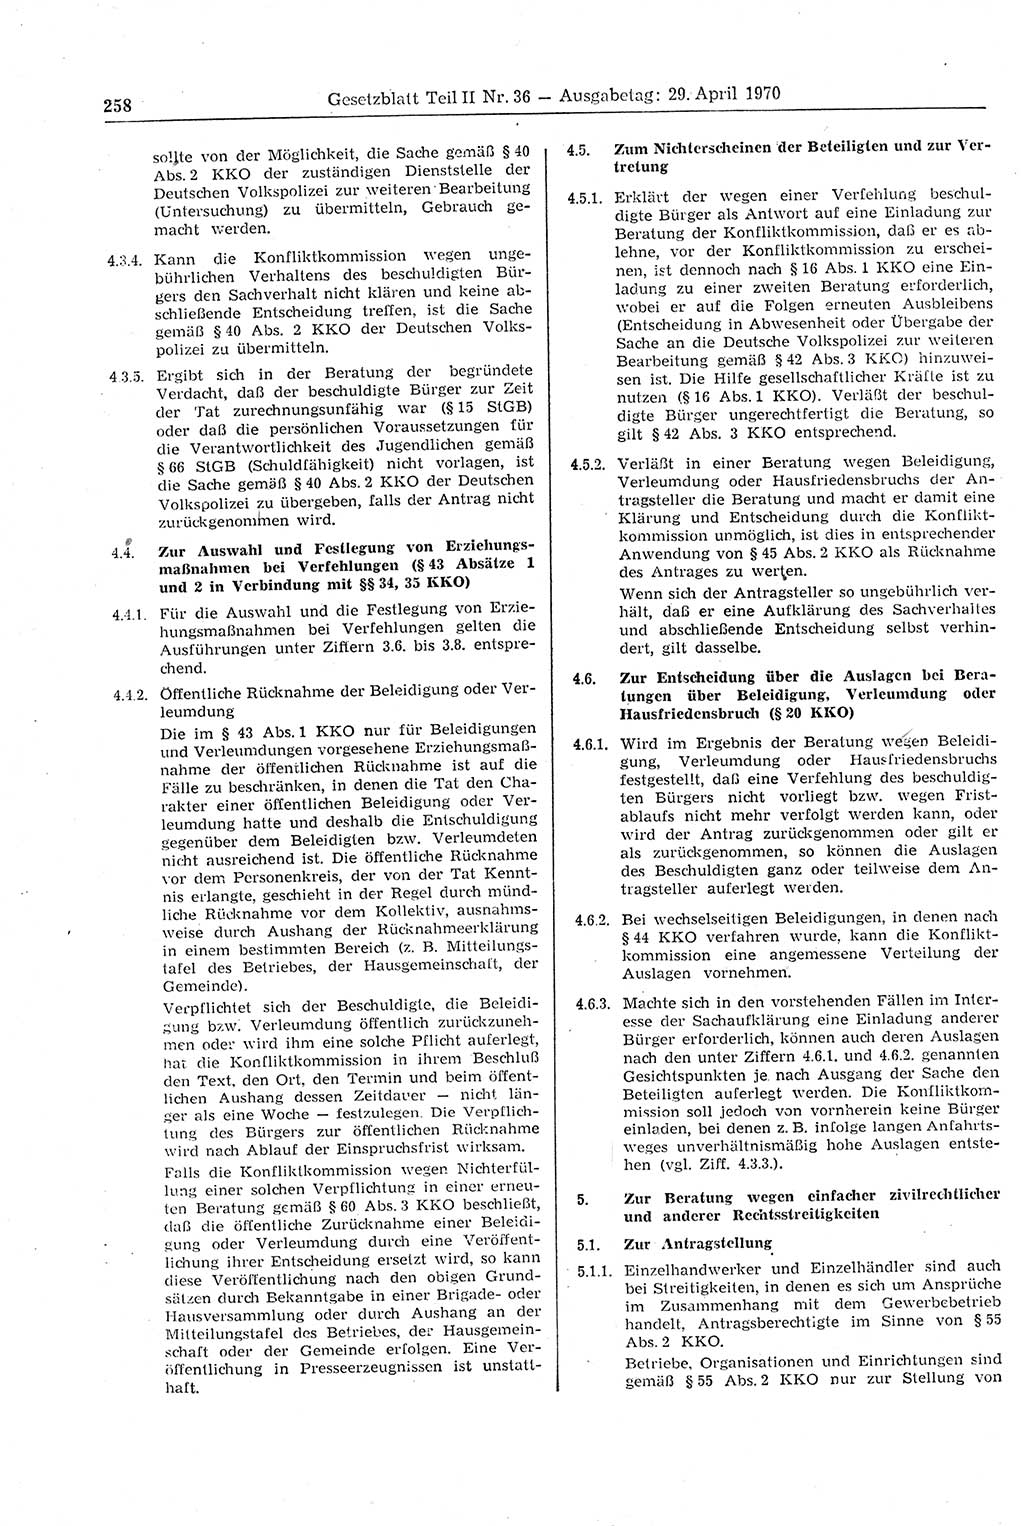 Gesetzblatt (GBl.) der Deutschen Demokratischen Republik (DDR) Teil ⅠⅠ 1970, Seite 258 (GBl. DDR ⅠⅠ 1970, S. 258)